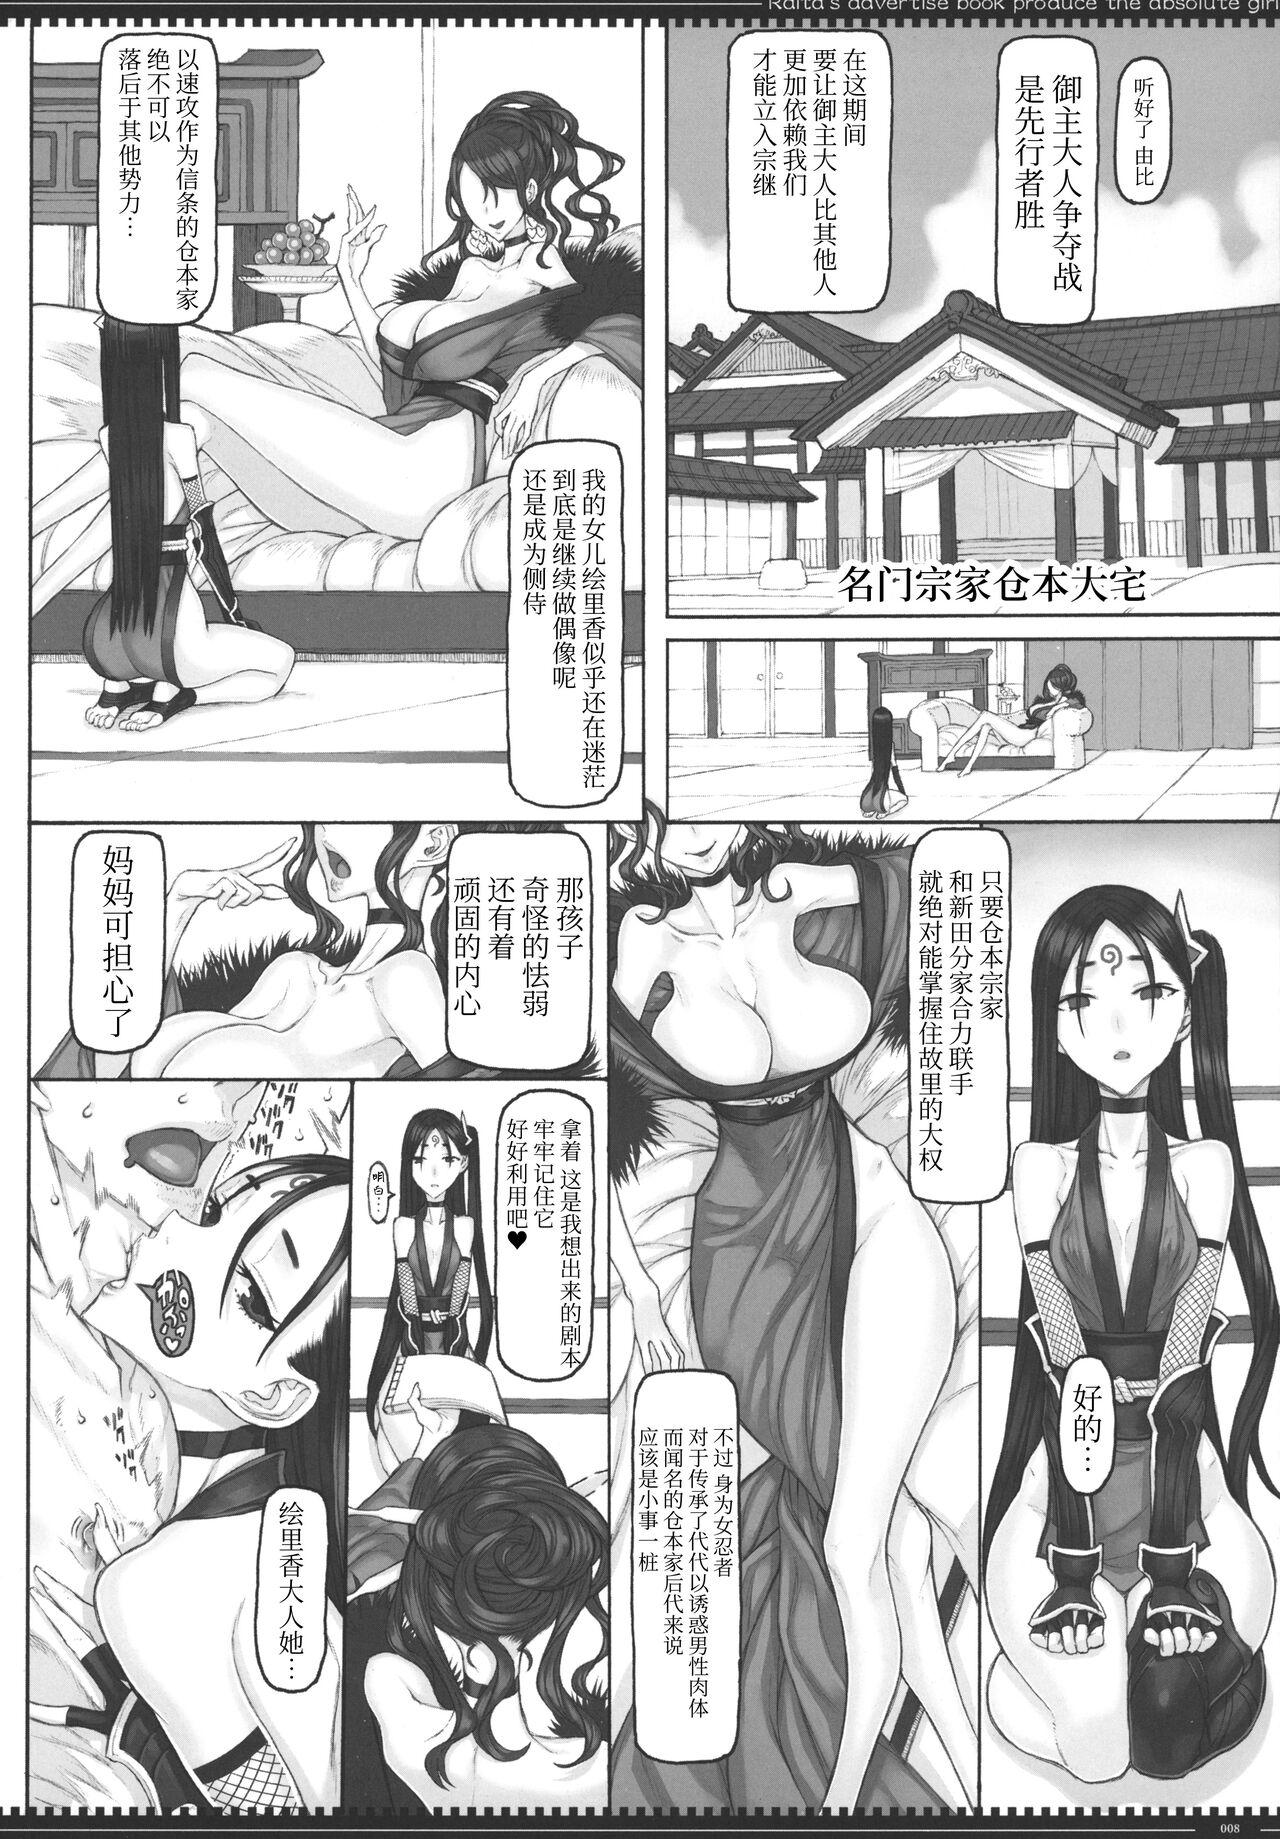 Old Young Mahou Shoujo 22.0 + C101 Kaijou Gentei Orihon - Zettai junpaku mahou shoujo Amateur Porn Free - Page 7